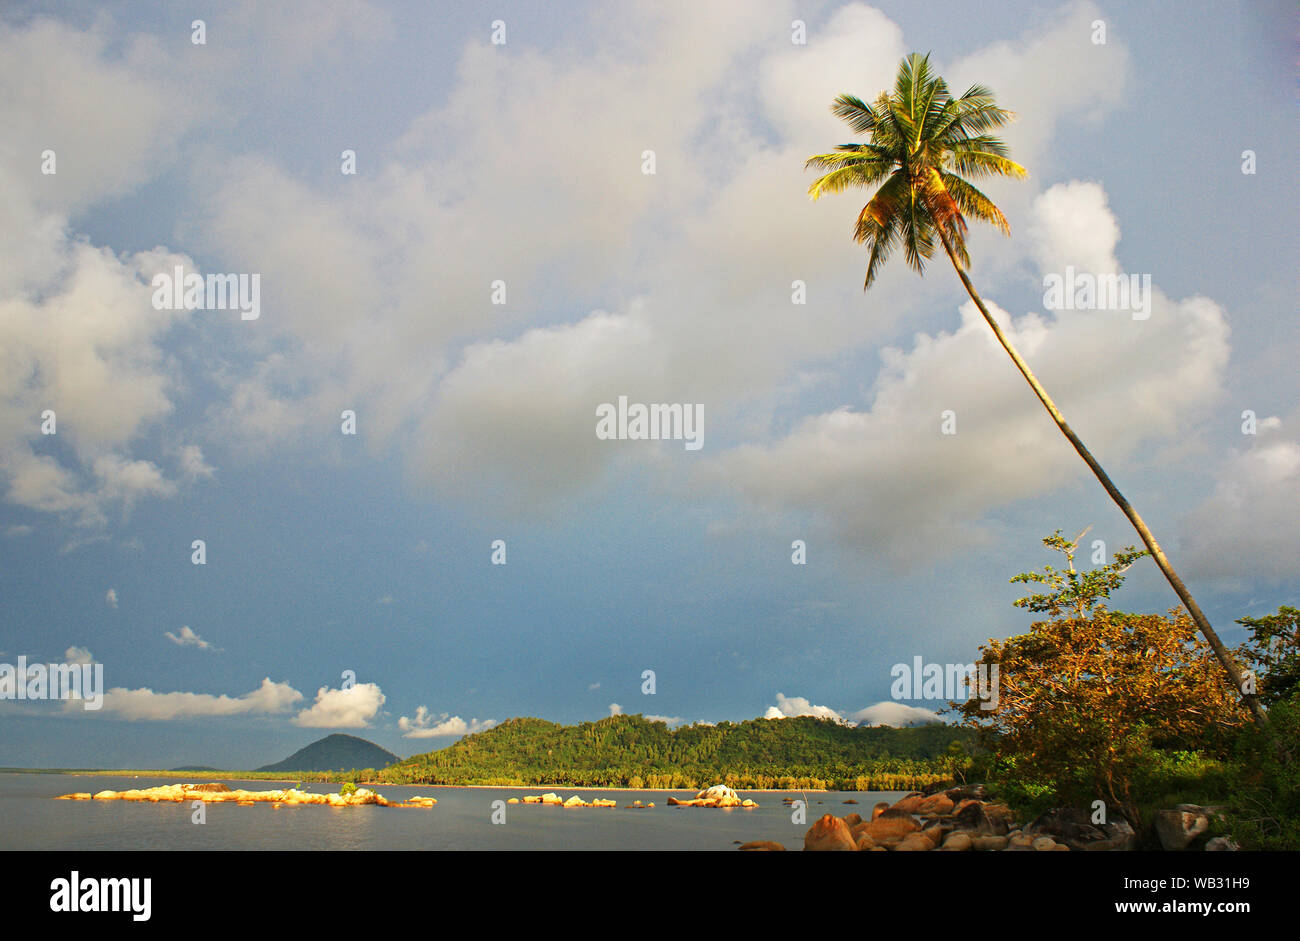 Plage de Pantai Batu Burung, Singkawang, l'ouest de Kalimantan, Indonésie Banque D'Images